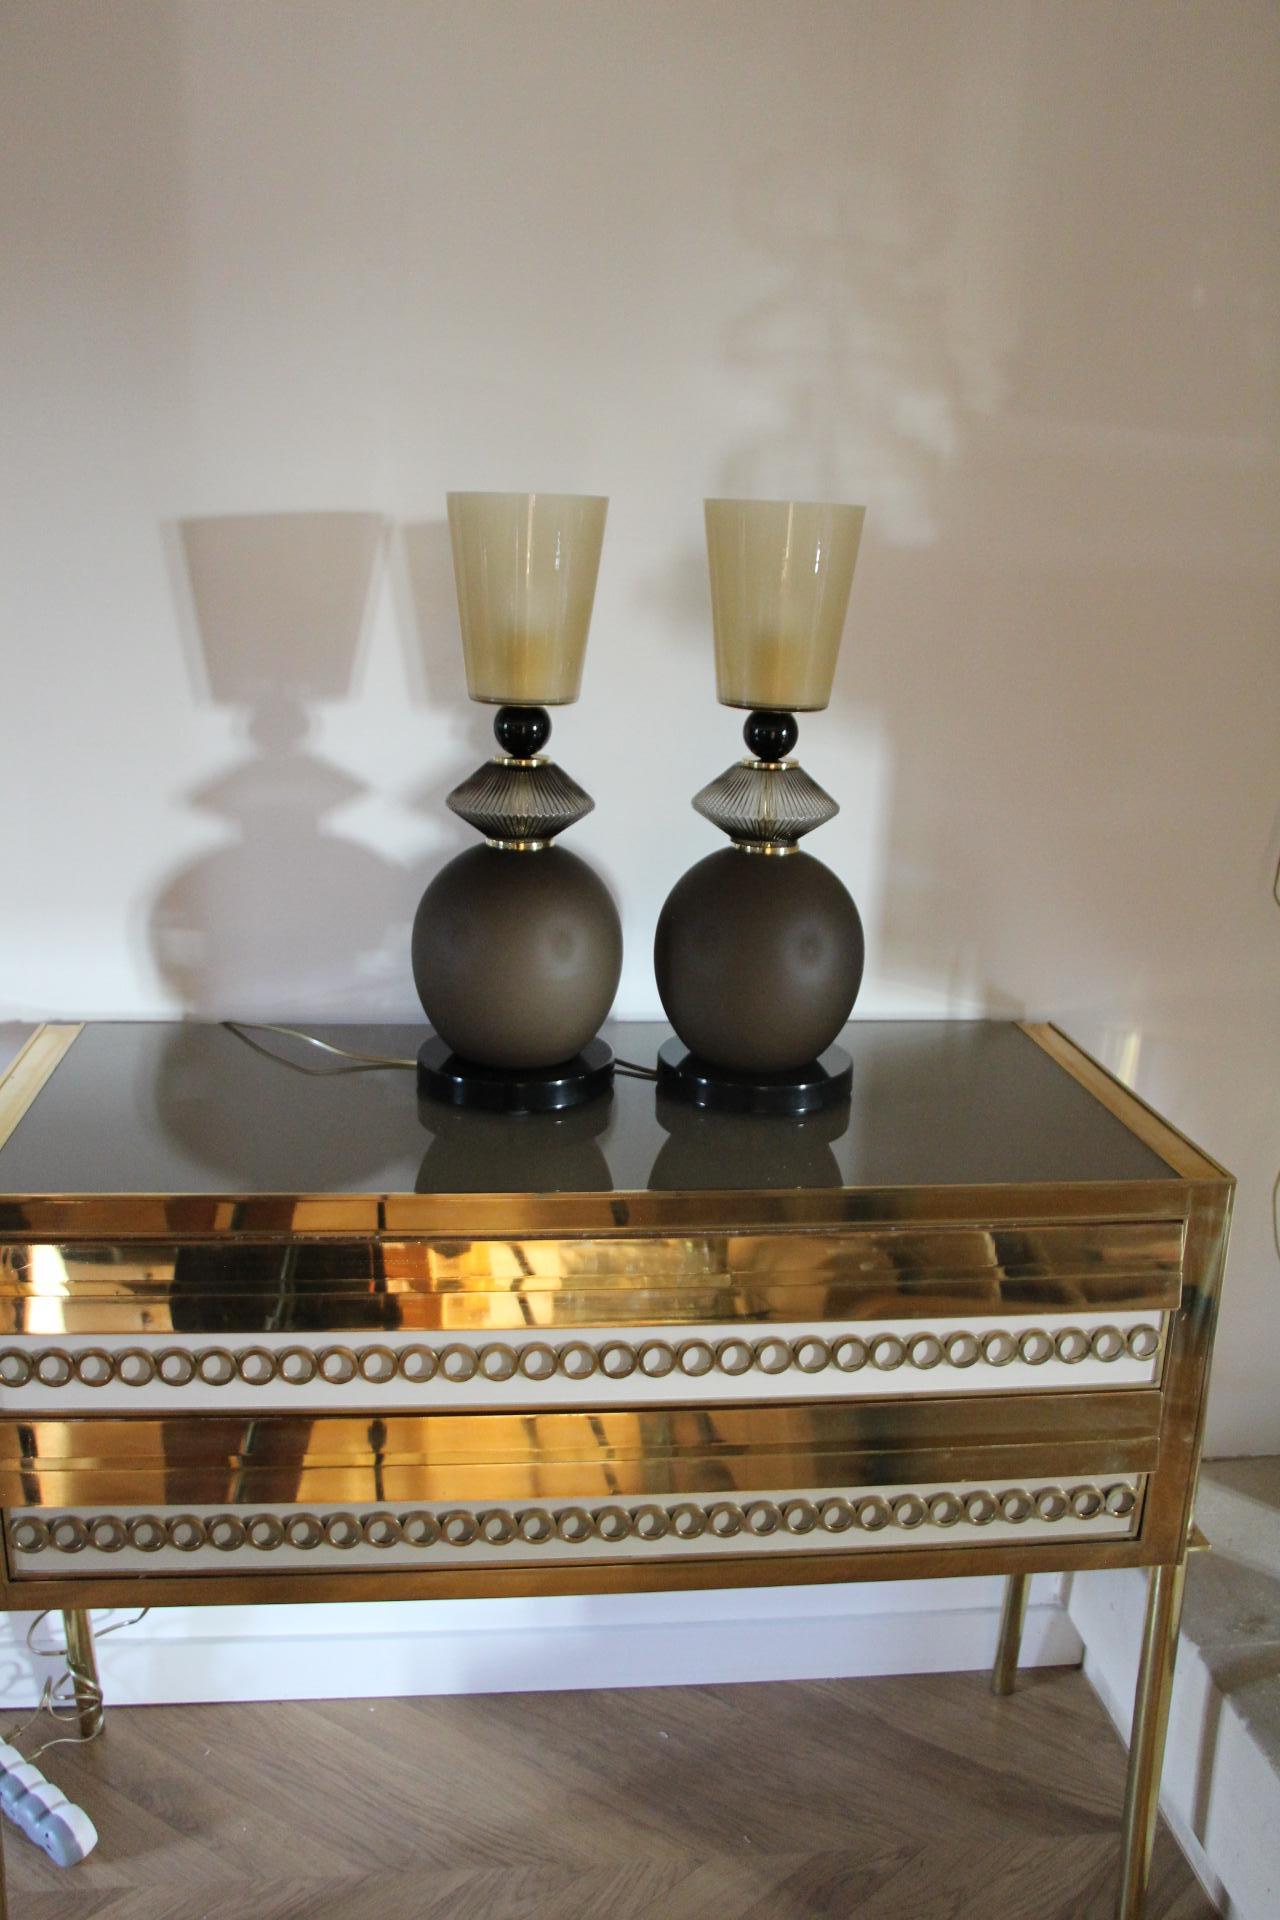 Cette impressionnante paire de lampes de table est fabriquée dans un très beau verre mat de couleur brun fumé. 
Sa base est faite d'une profonde pièce de verre de Murano noir brillant qui rappelle sa boule de verre noire supérieure. Son corps